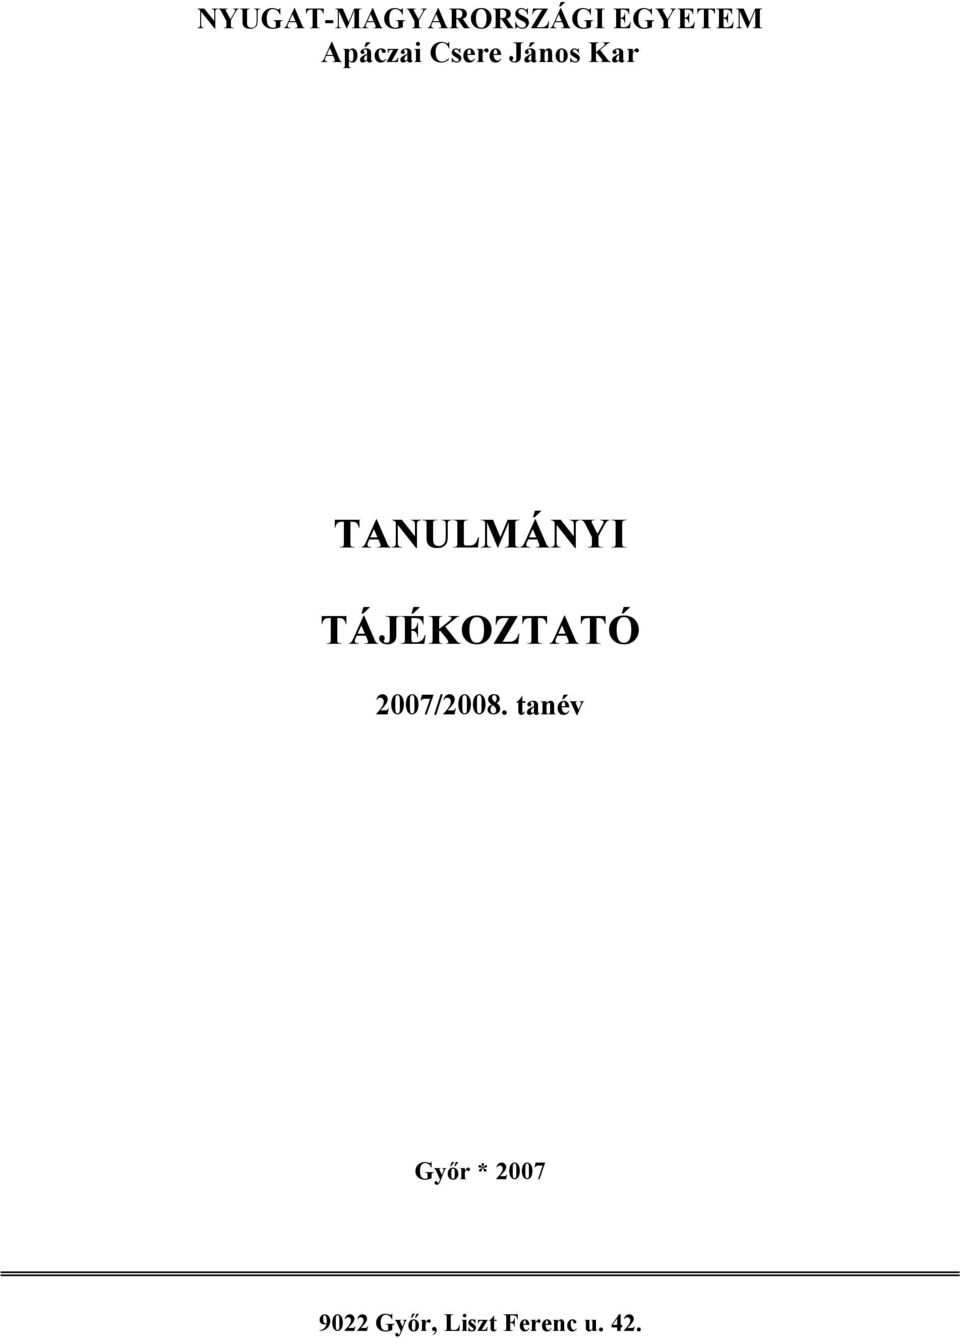 TANULMÁNYI TÁJÉKOZTATÓ 2007/2008.